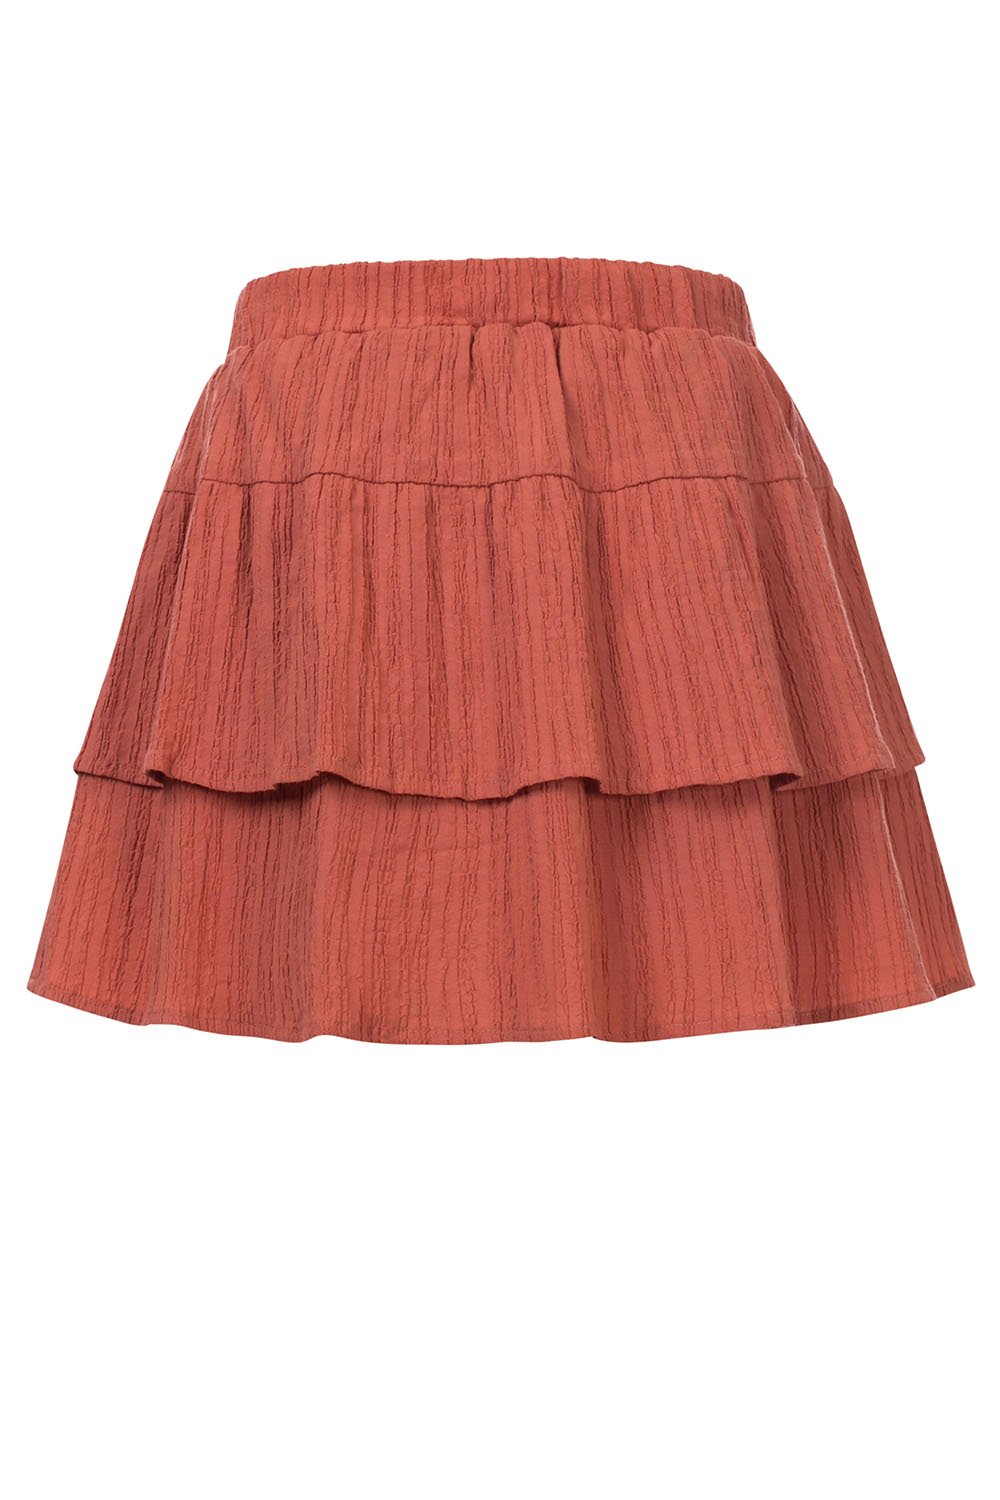 Meisjes Little jaquard skirt van LOOXS Little in de kleur Redwood in maat 128.